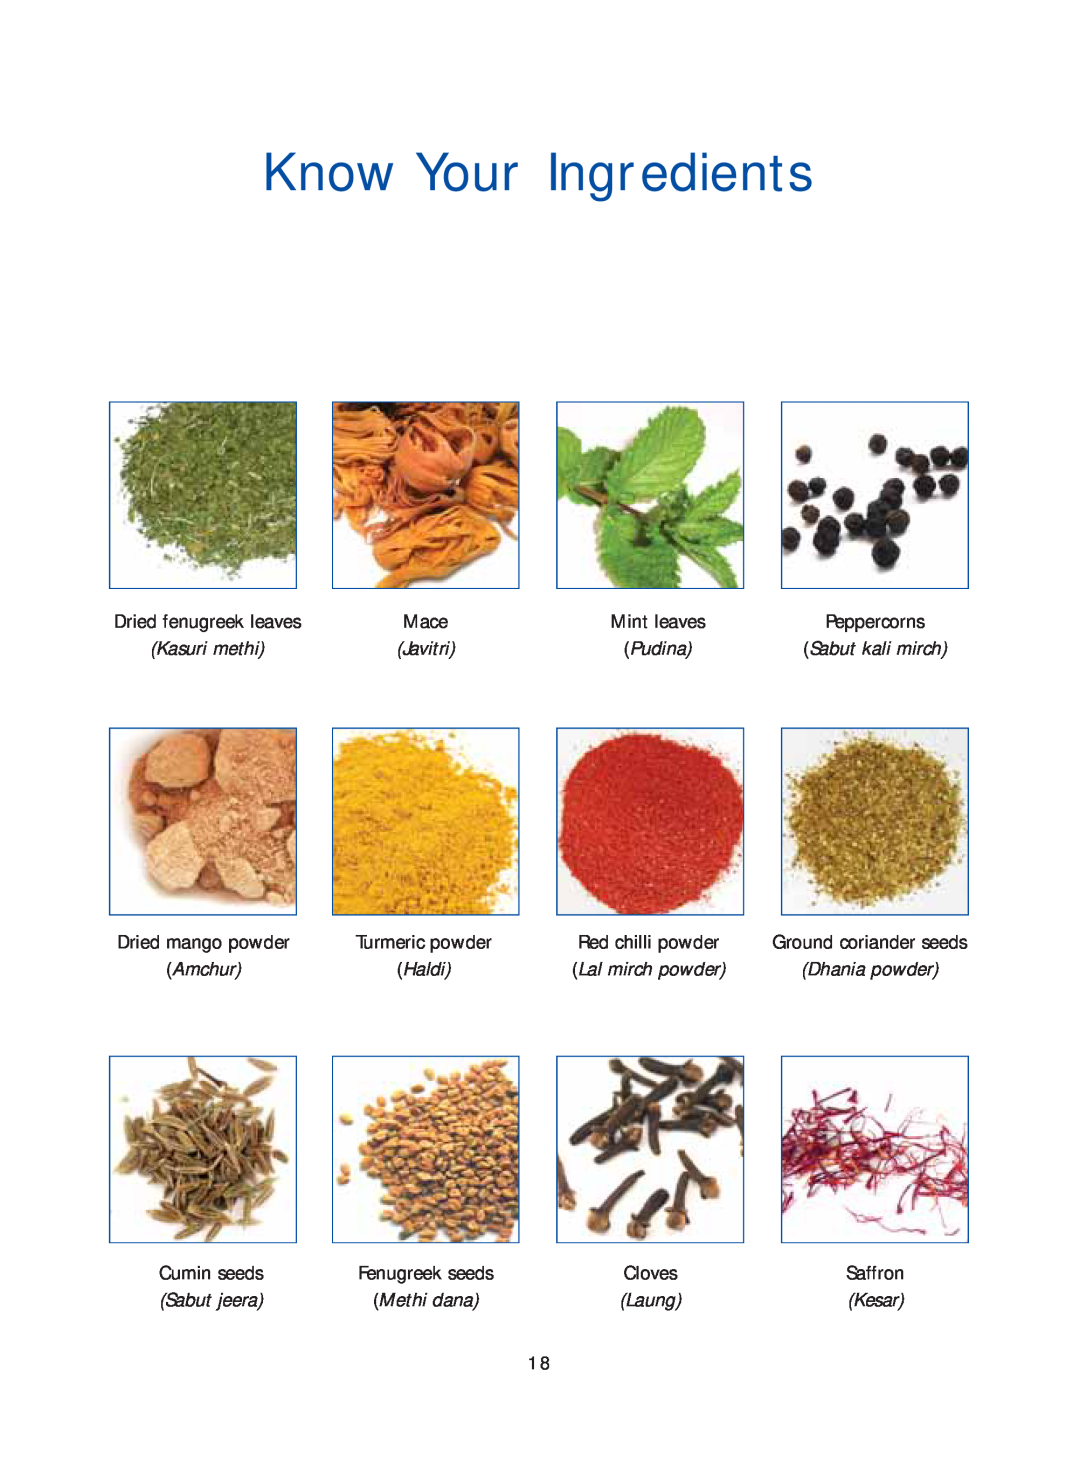 Samsung Microwave Oven Know Your Ingredients, Sabut jeera, Dhania powder, Methi dana, Dried fenugreek leaves, Peppercorns 